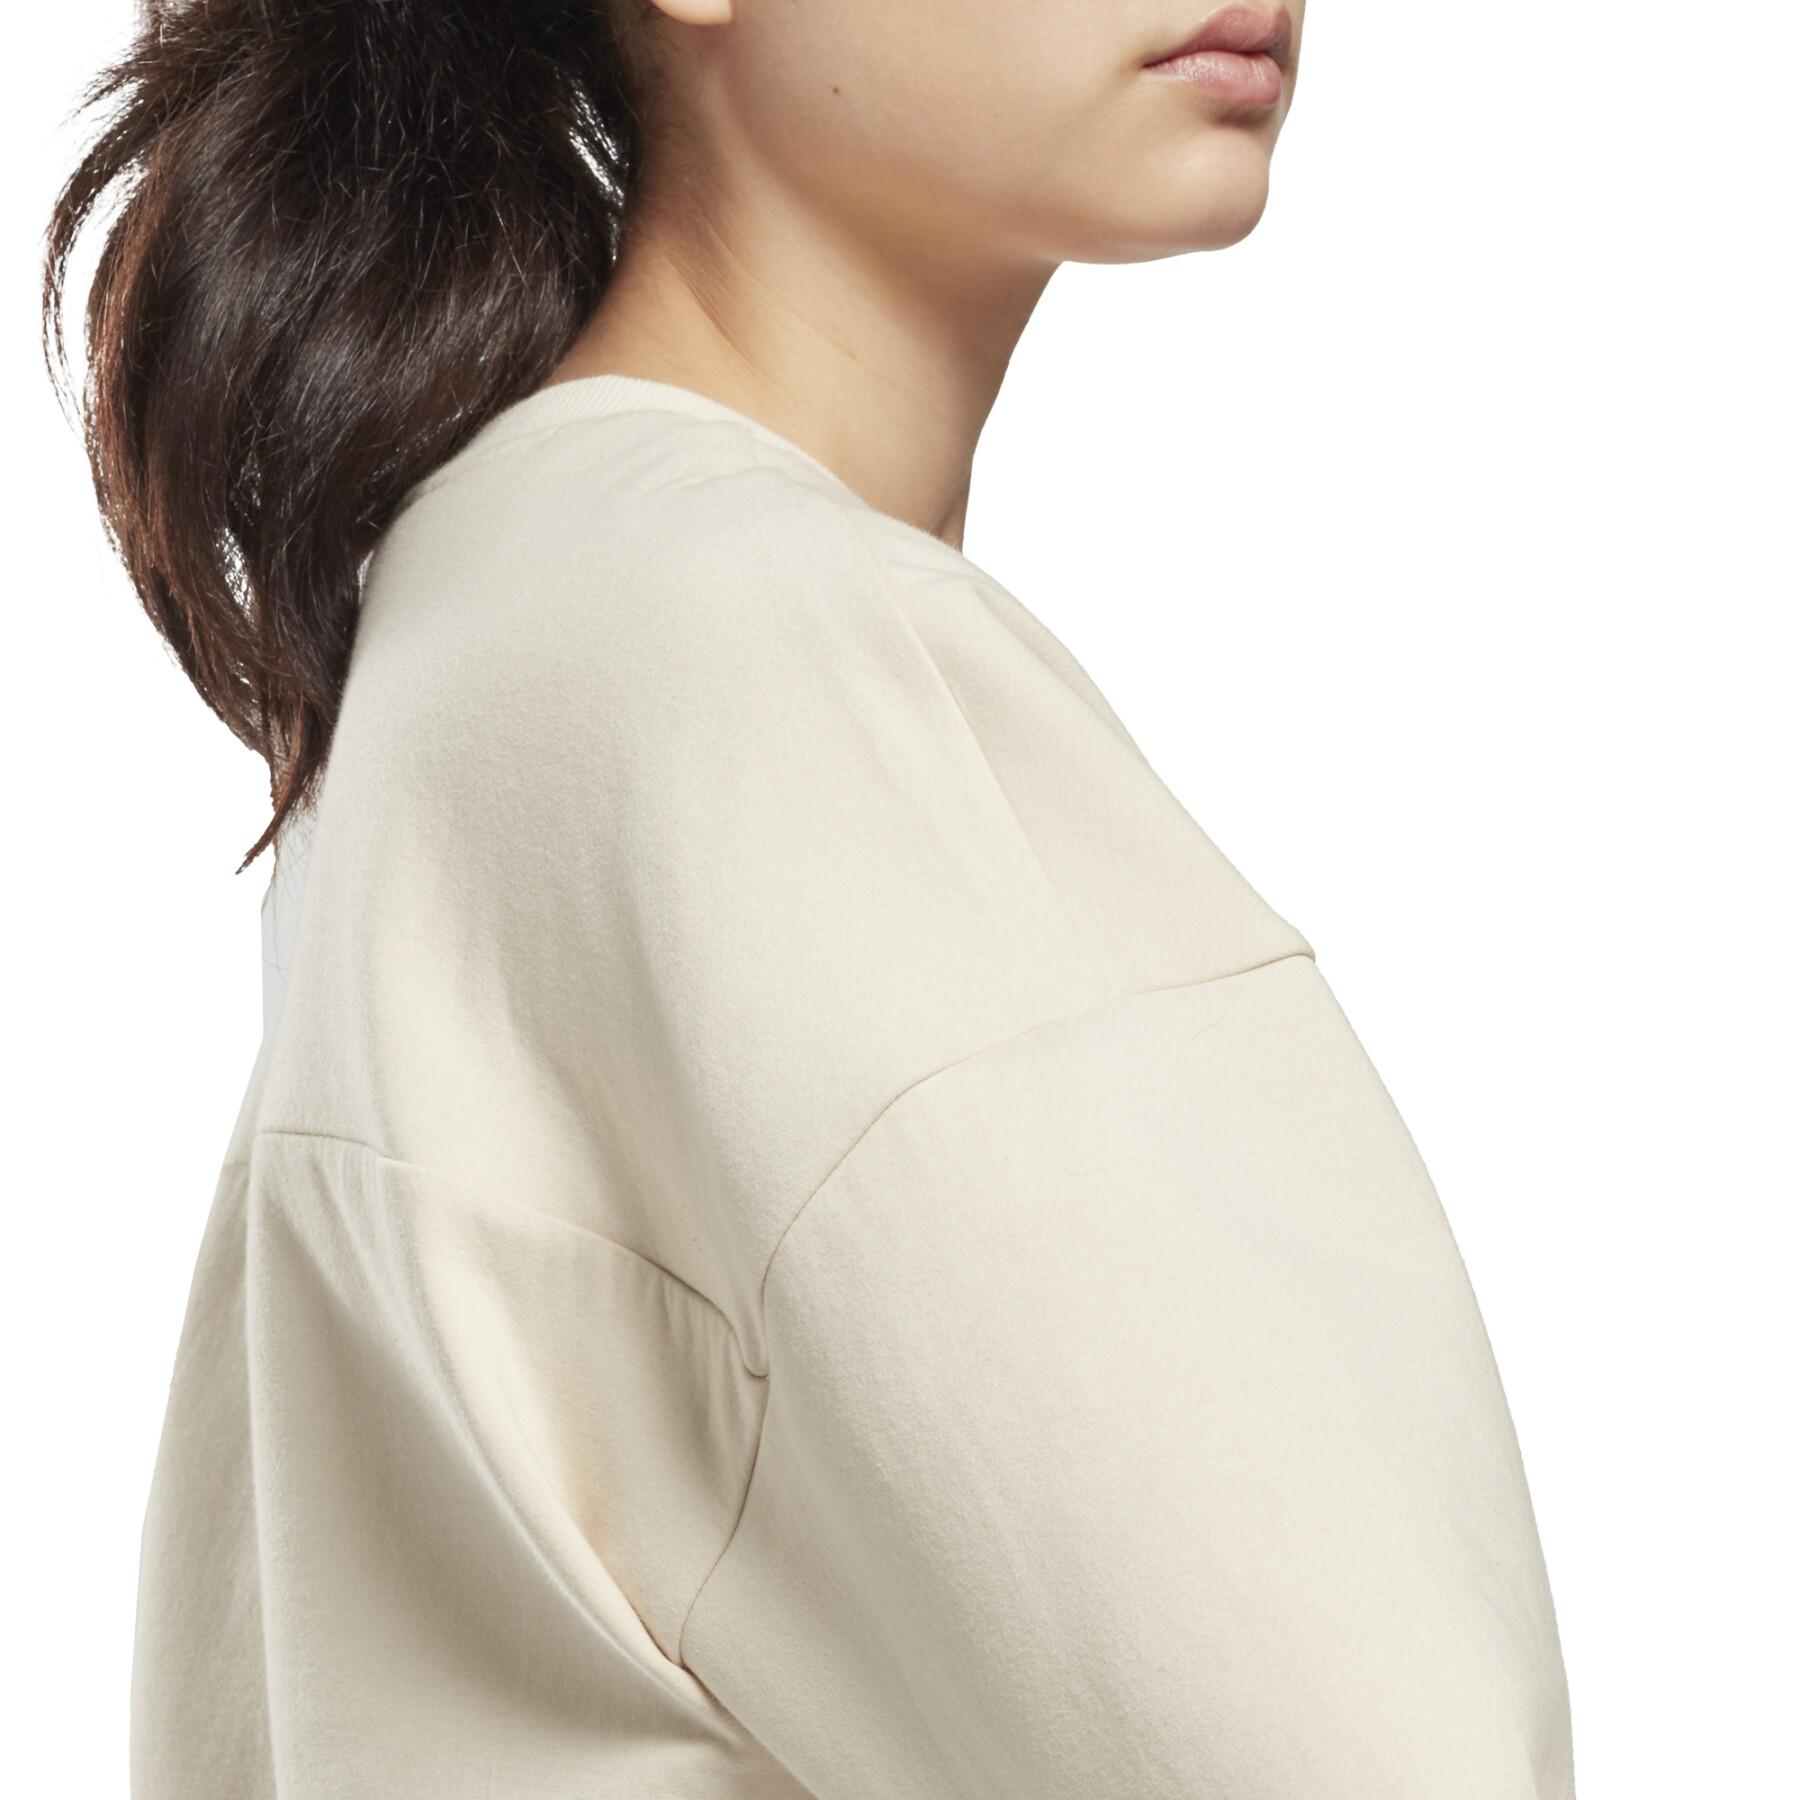 Leichtes Sweatshirt aus Baumwolle mit Reißverschluss für Frauen Reebok DreamBlend